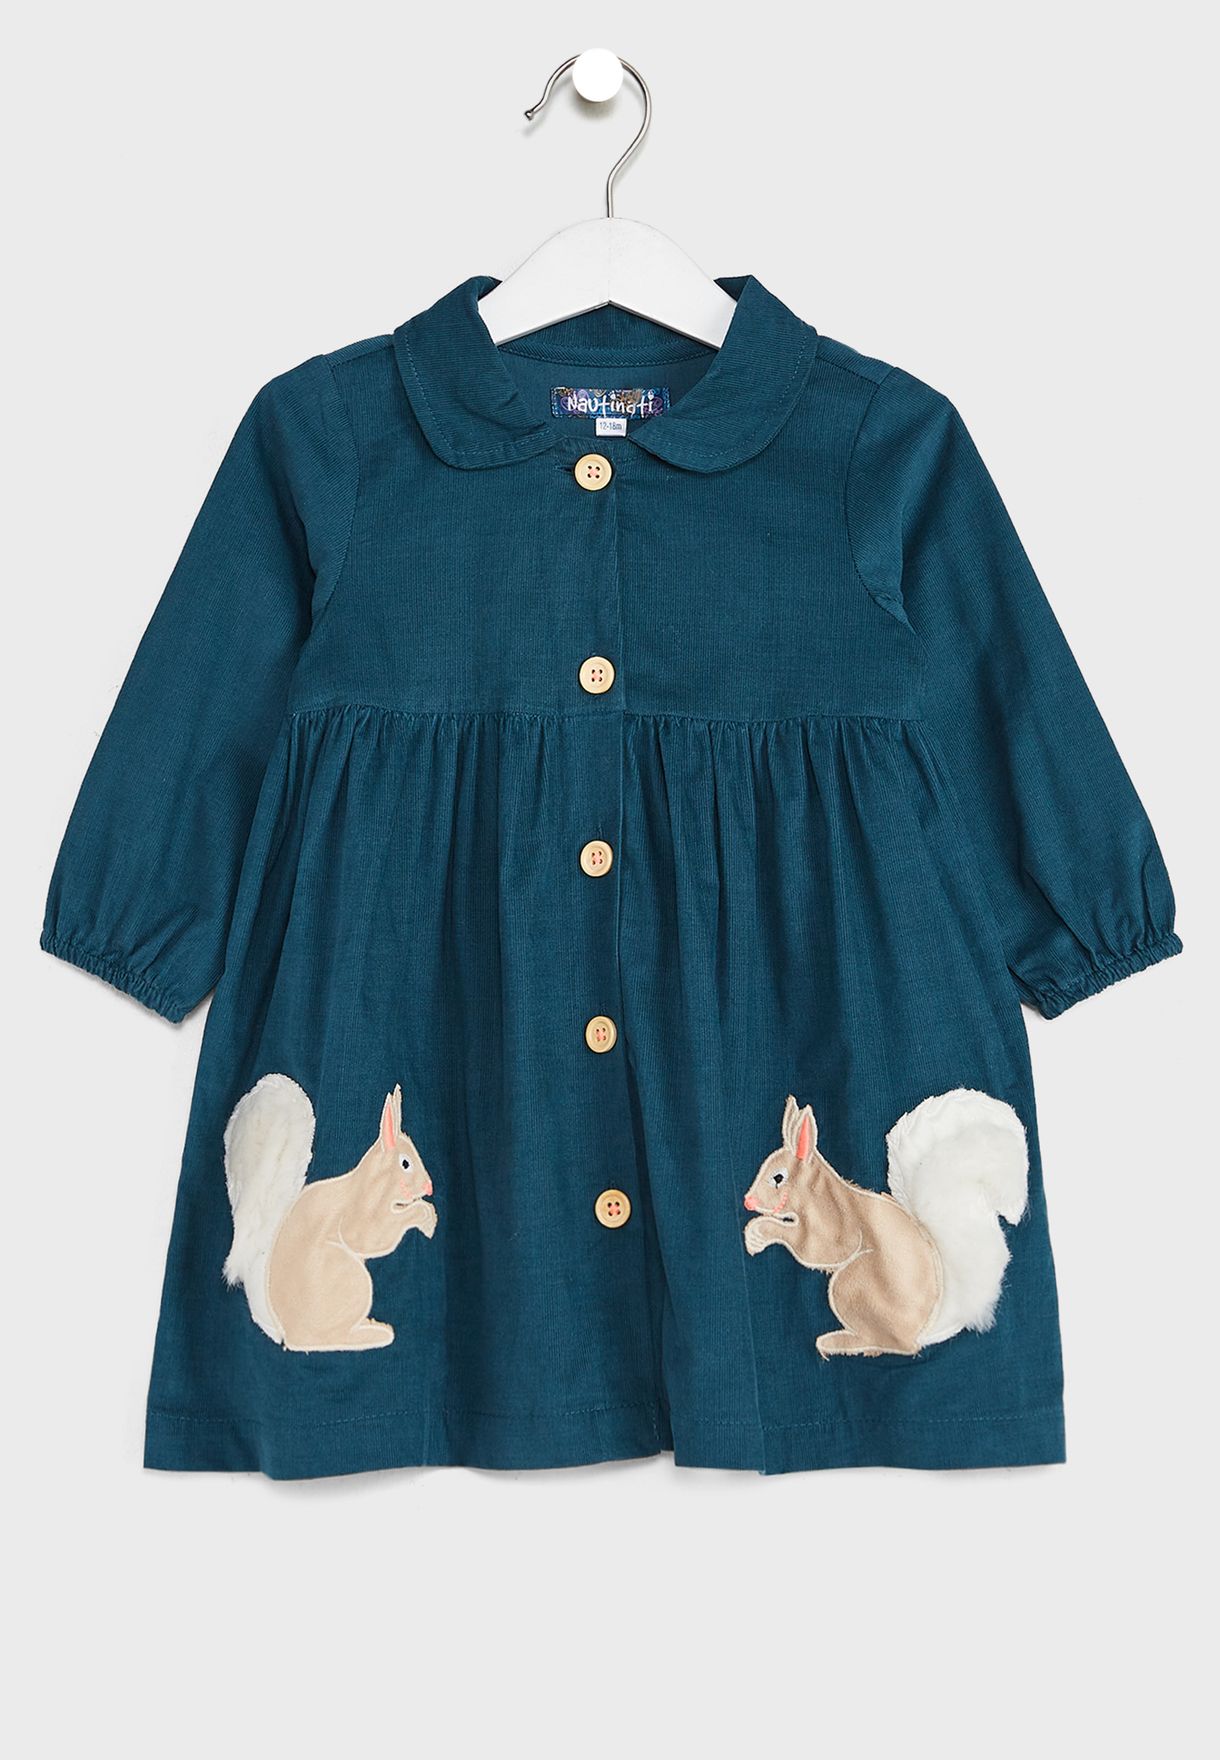 Detailed Pocket Shirt Denim Dress